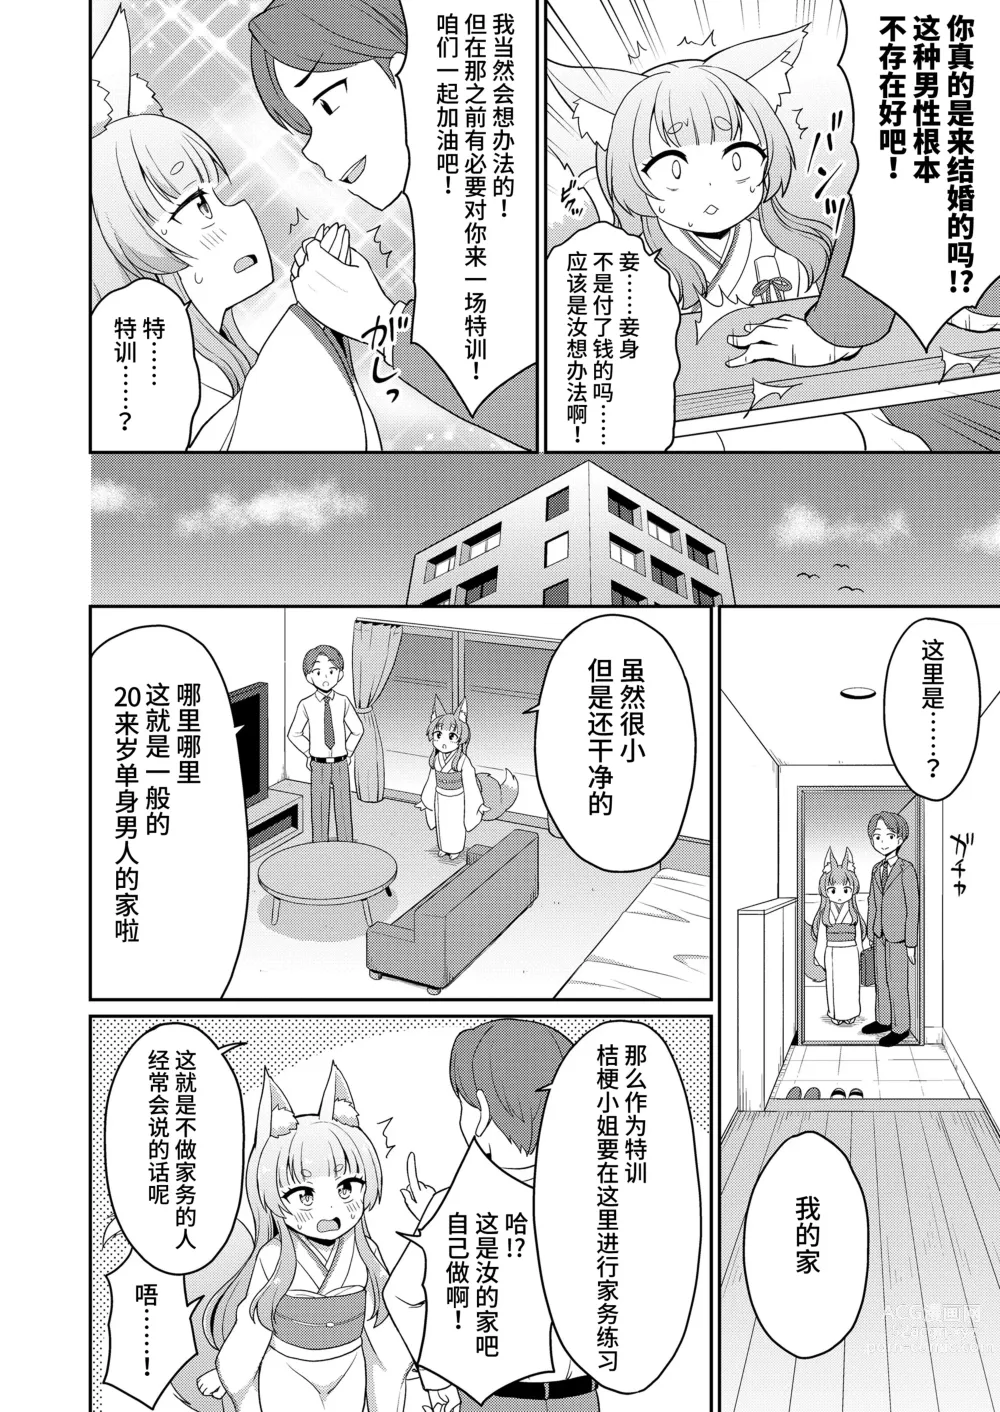 Page 4 of manga 婚活 1-2